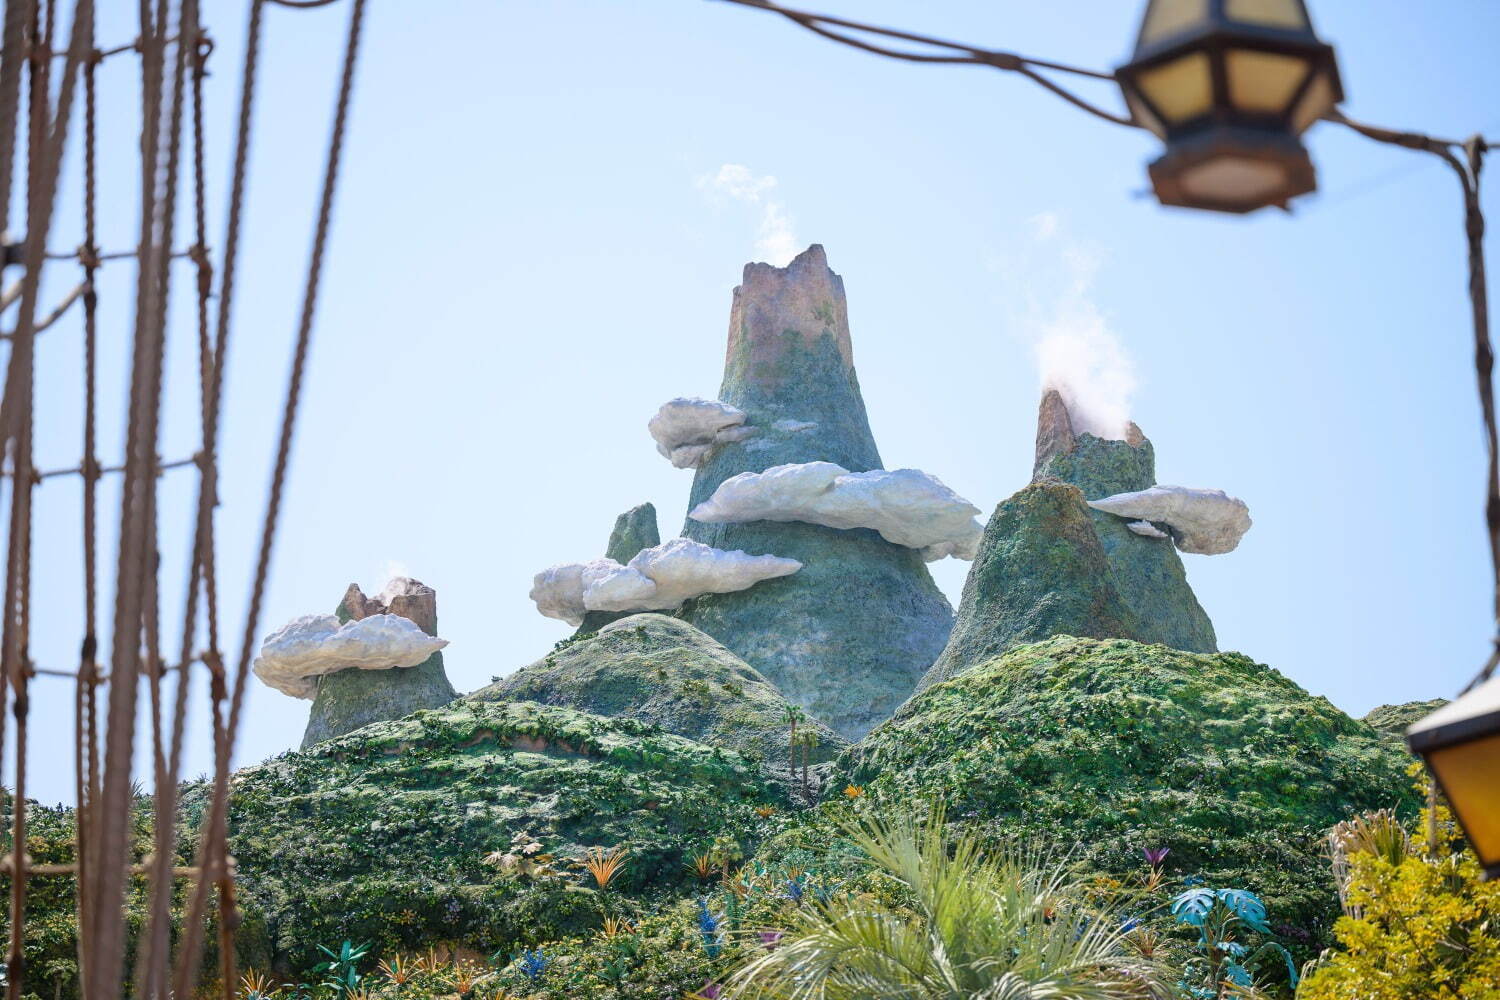 Peter Pan's Never Land - Tokyo DisneySea